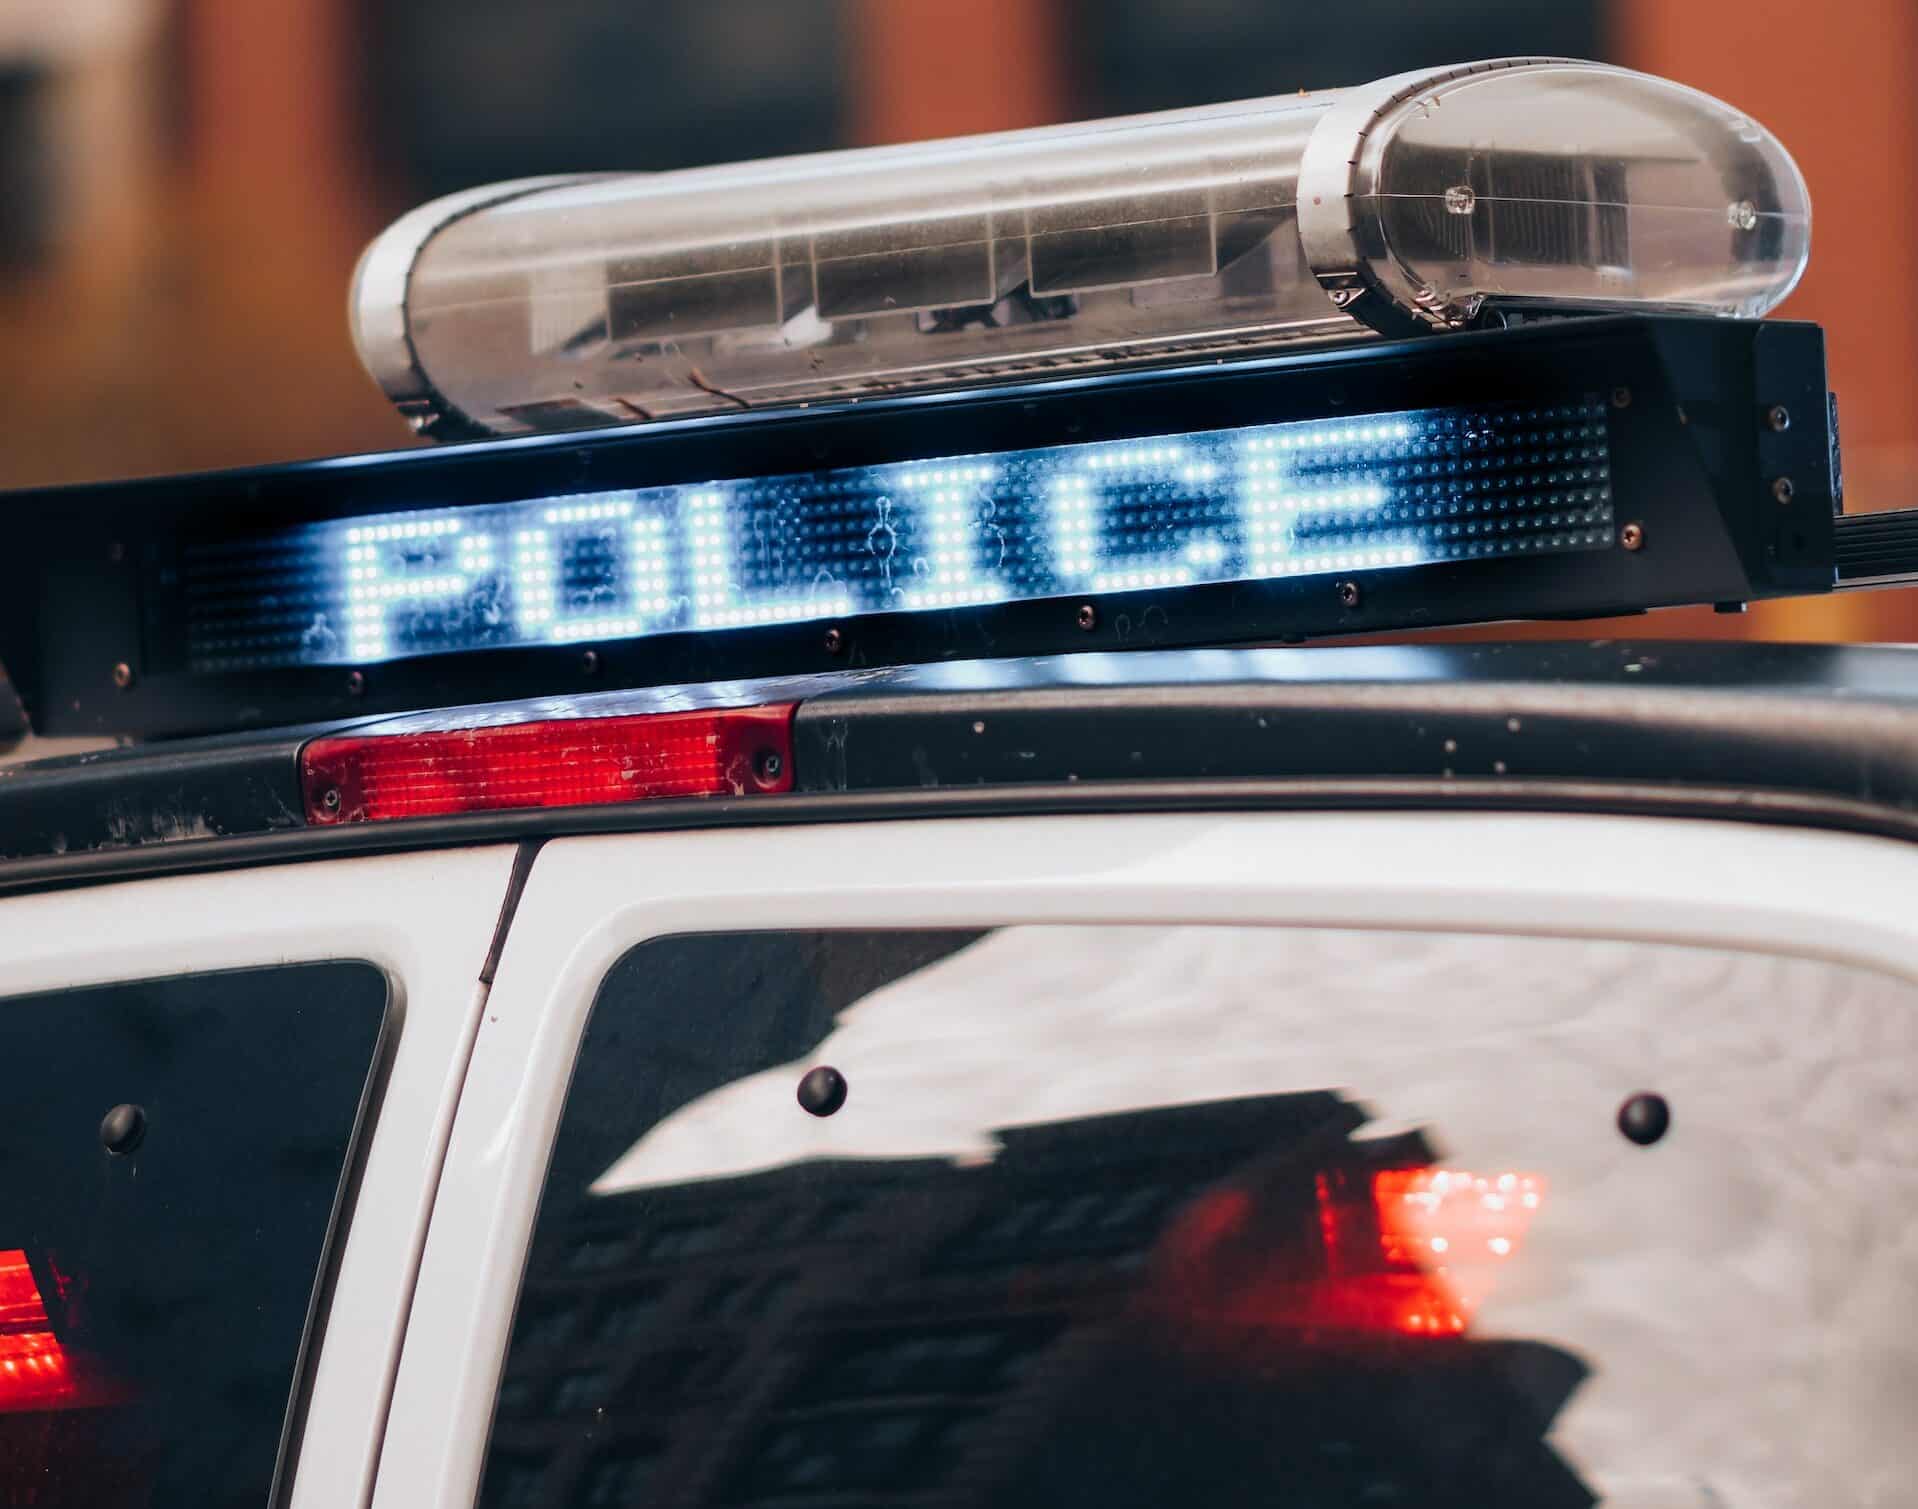 Dach eines Polizeiautor mit Police in Leuchtschrift auf dem Warnlicht